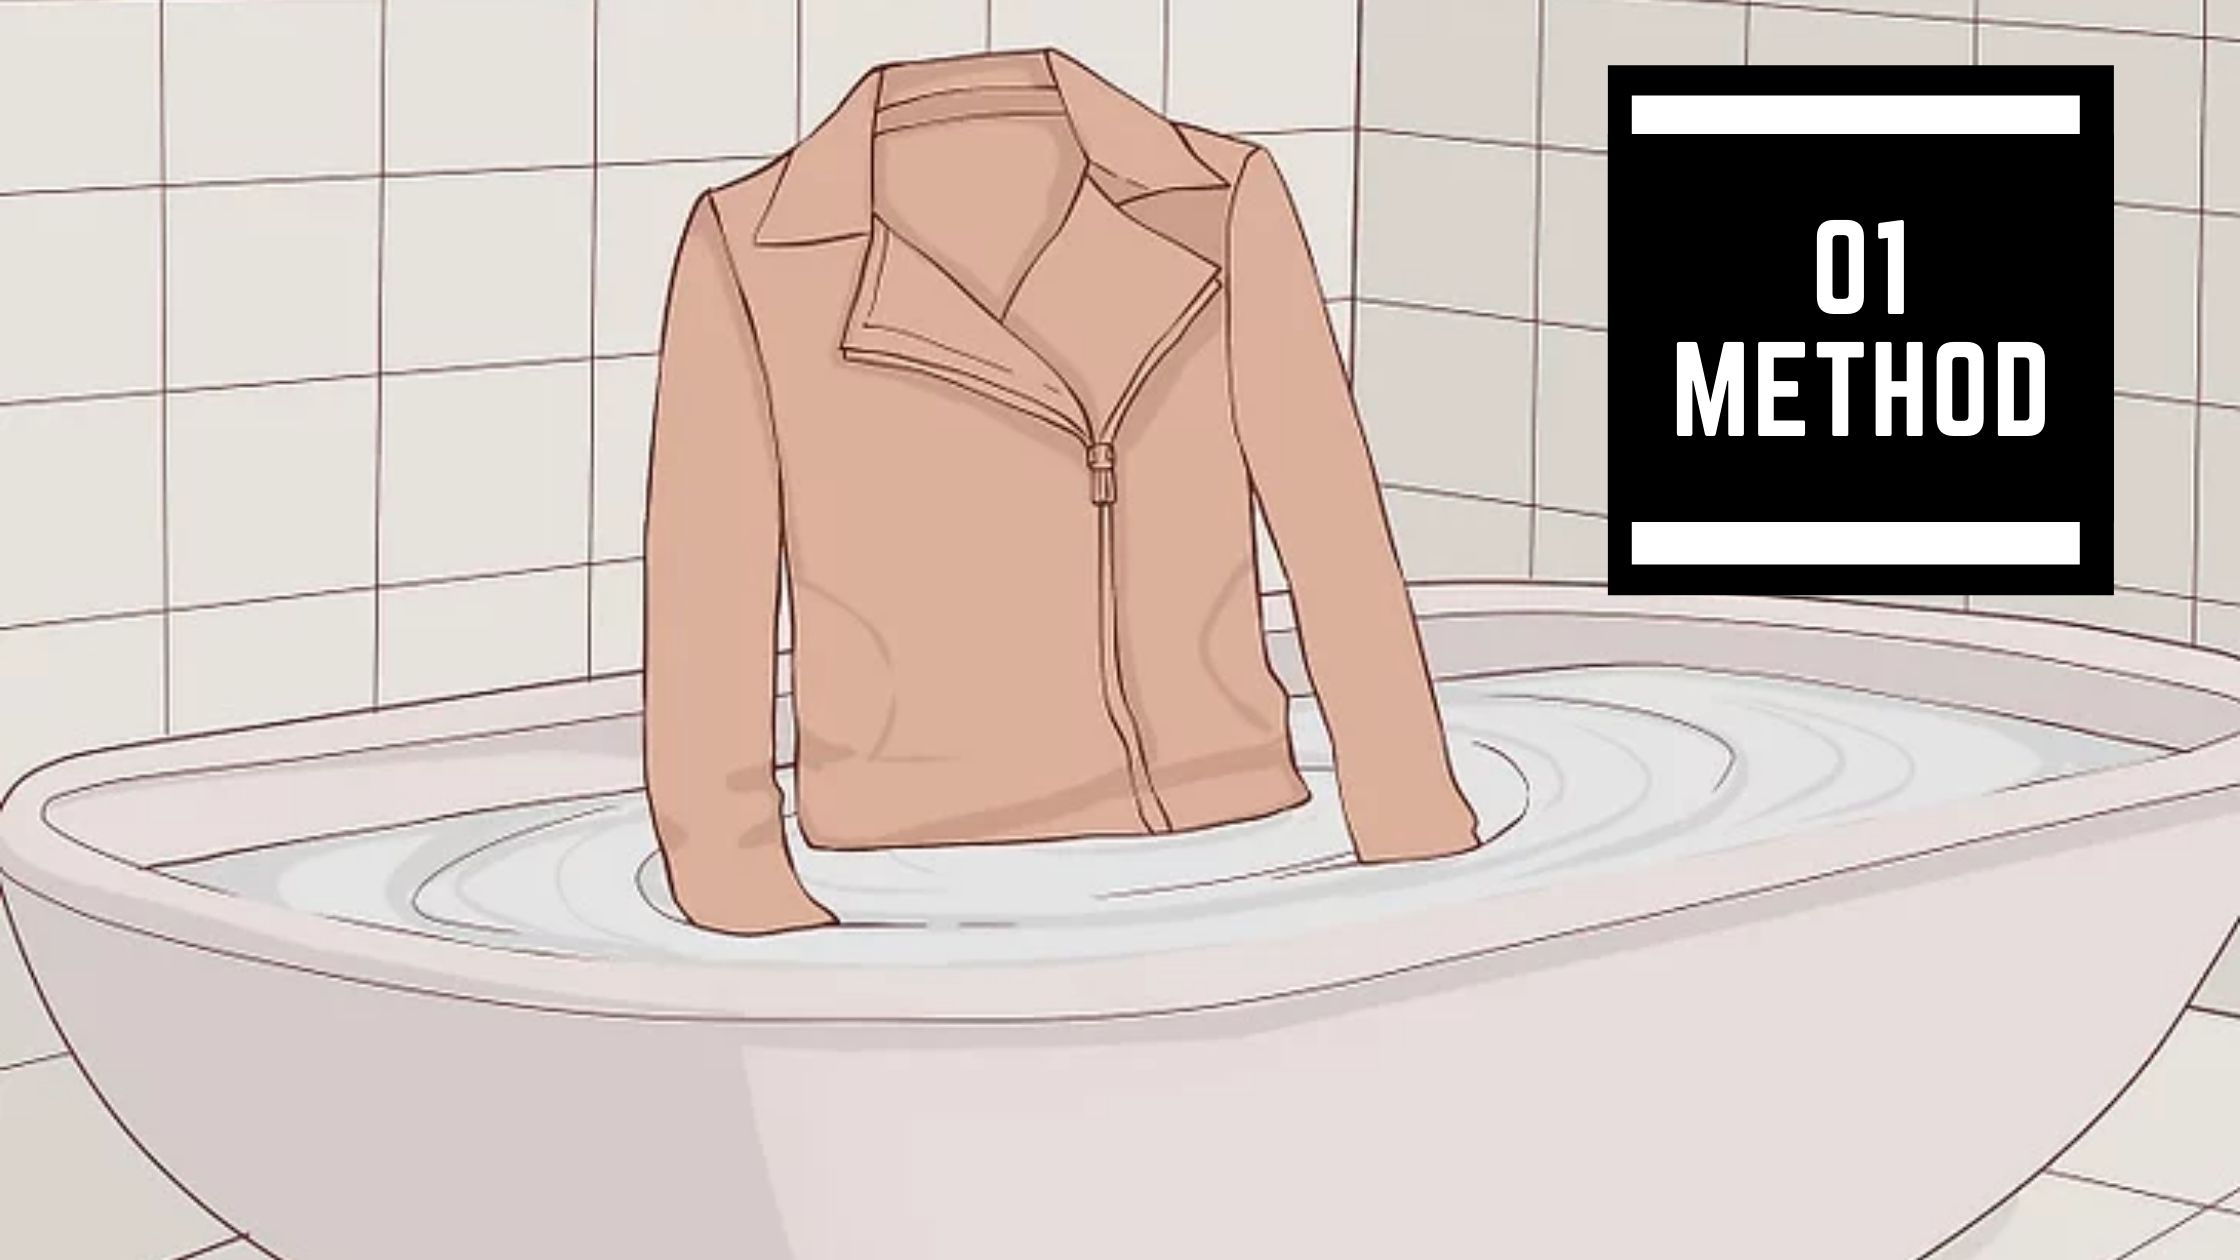 Shrinking Your Jacket in a Bathtub